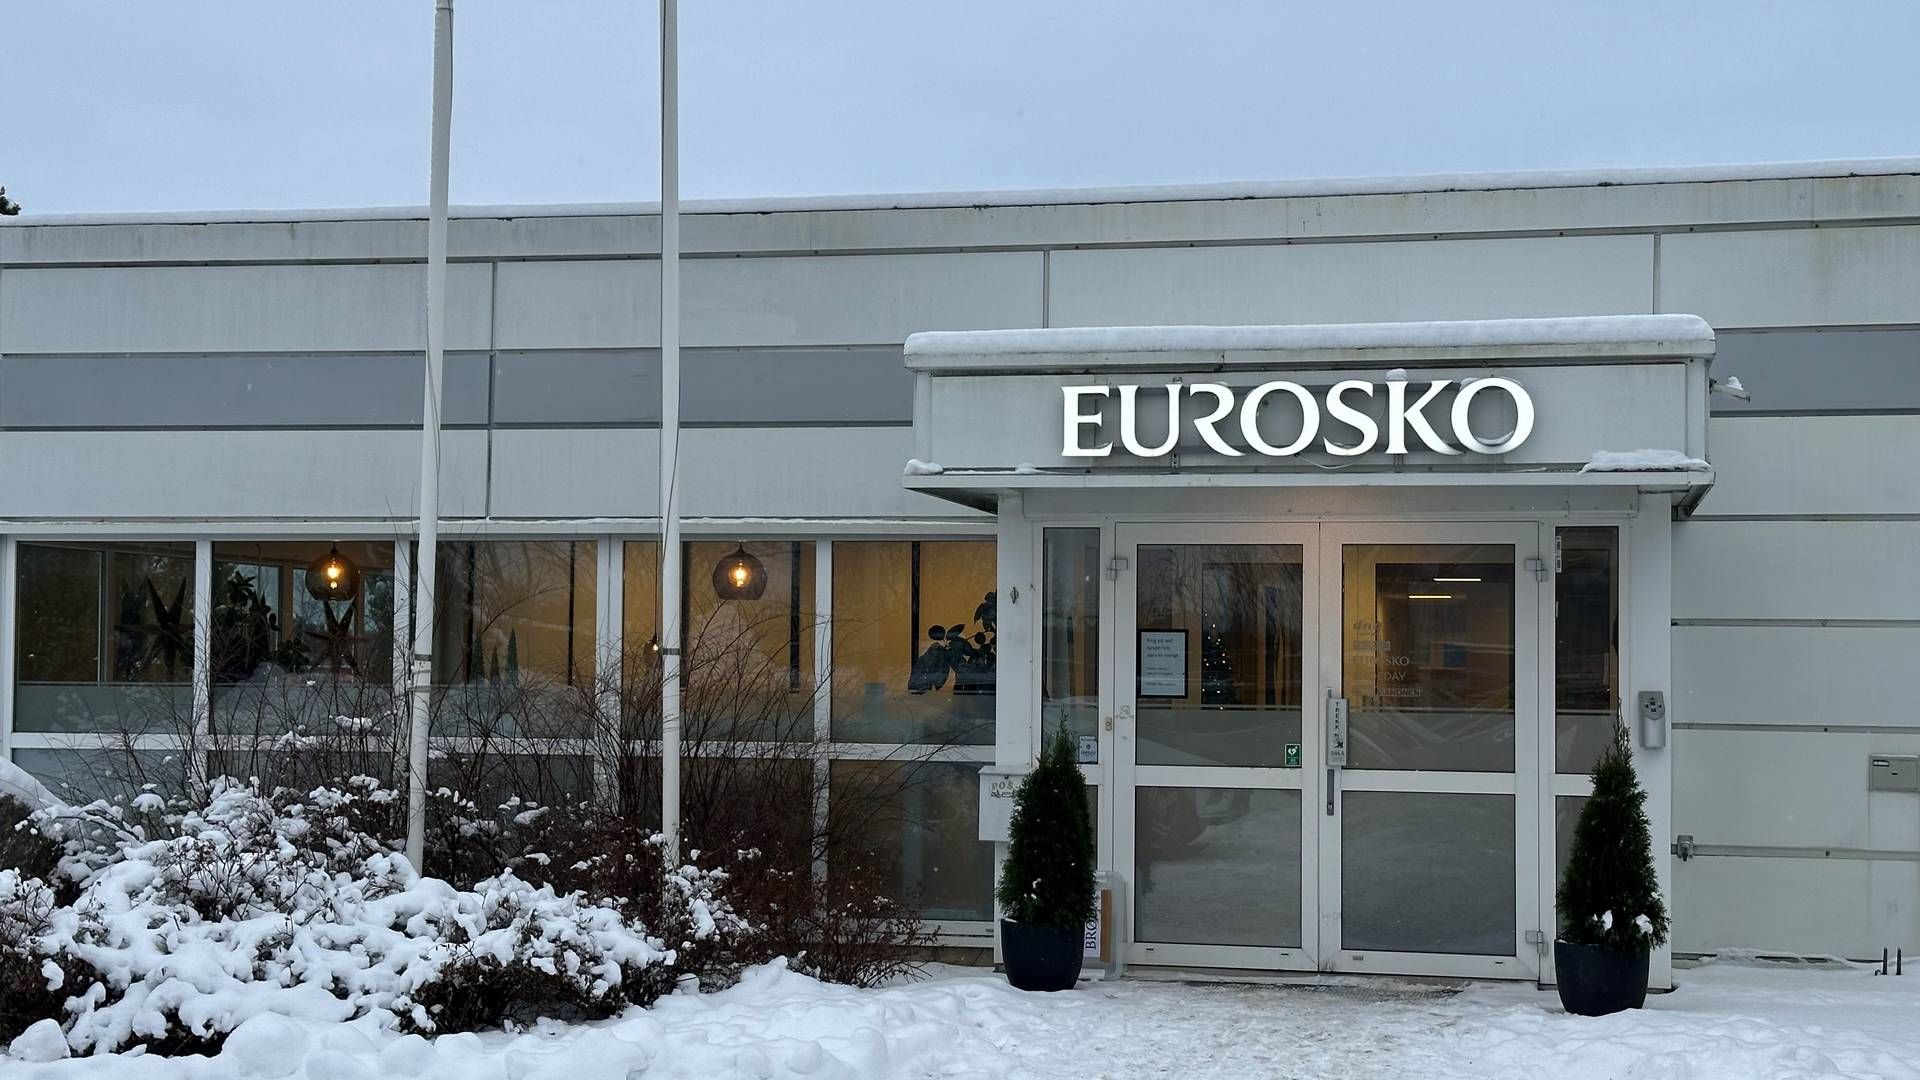 HACKING: Skokjeden Eurosko har vært utsatt for hackerangrep. | Foto: Gøril Huse / HandelsWatch